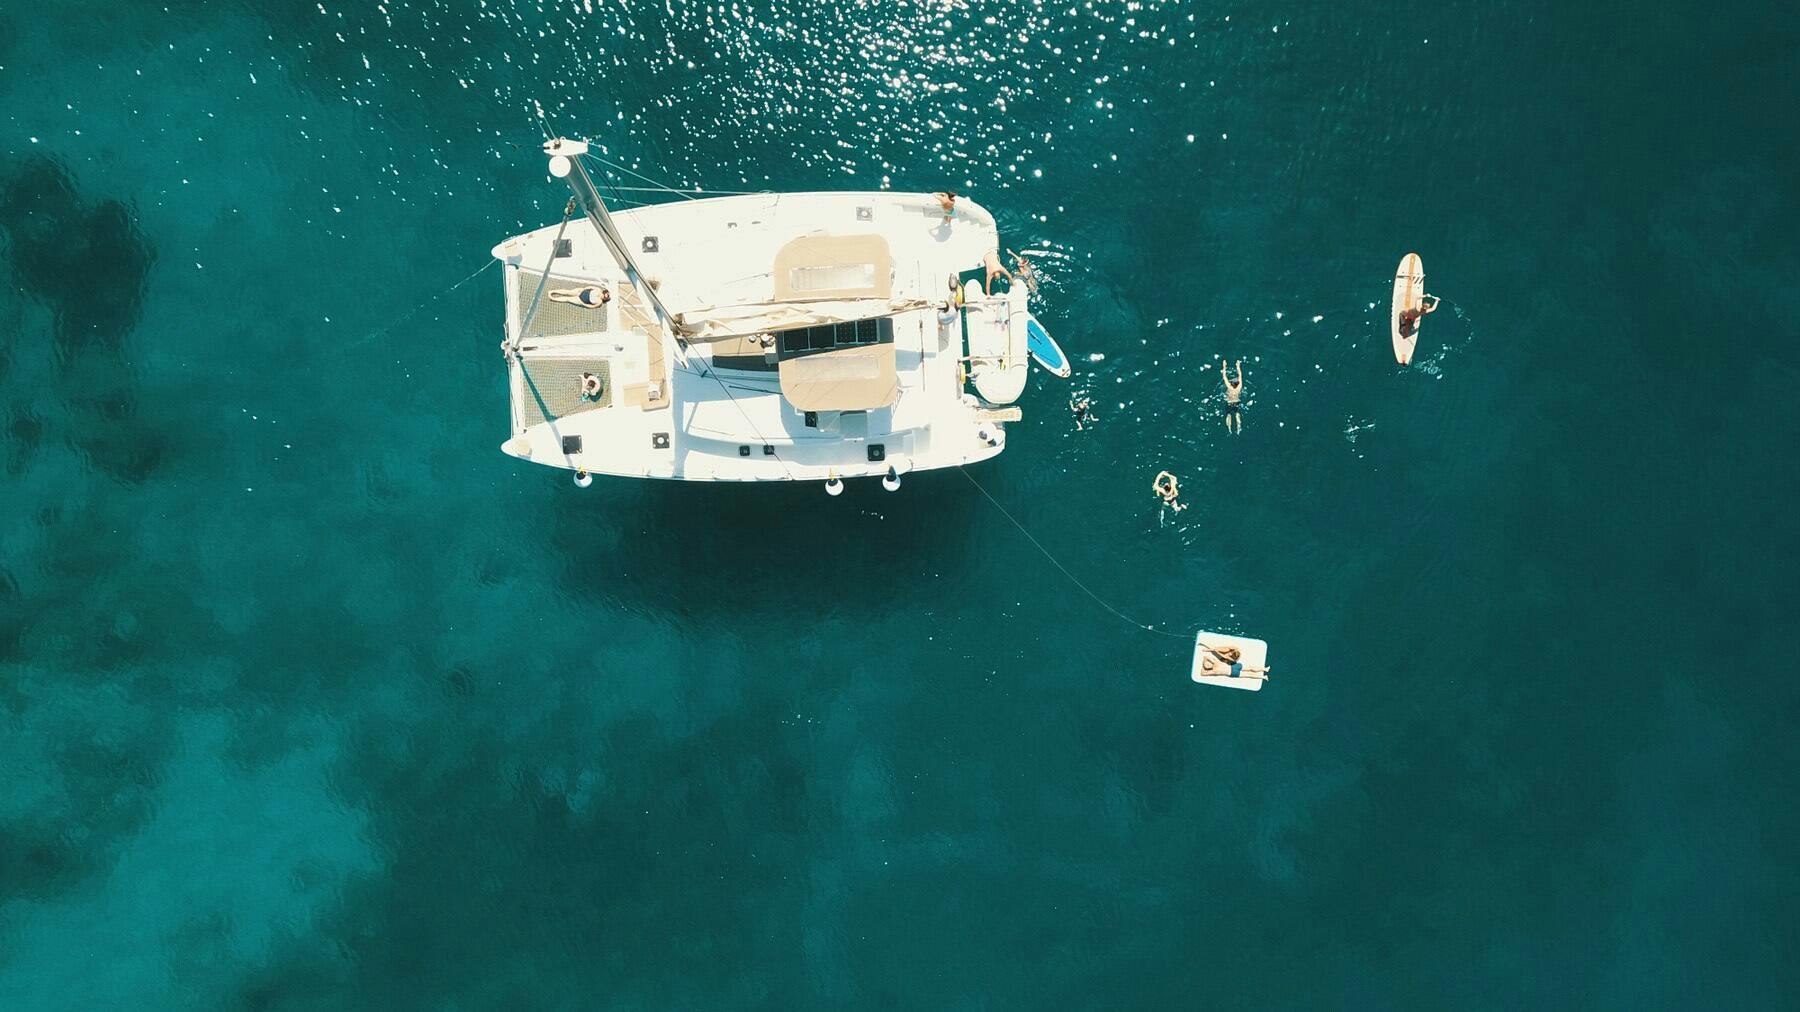 Comfort Catamaran Cruise to Mirabello Bay from Agios Nikolaos